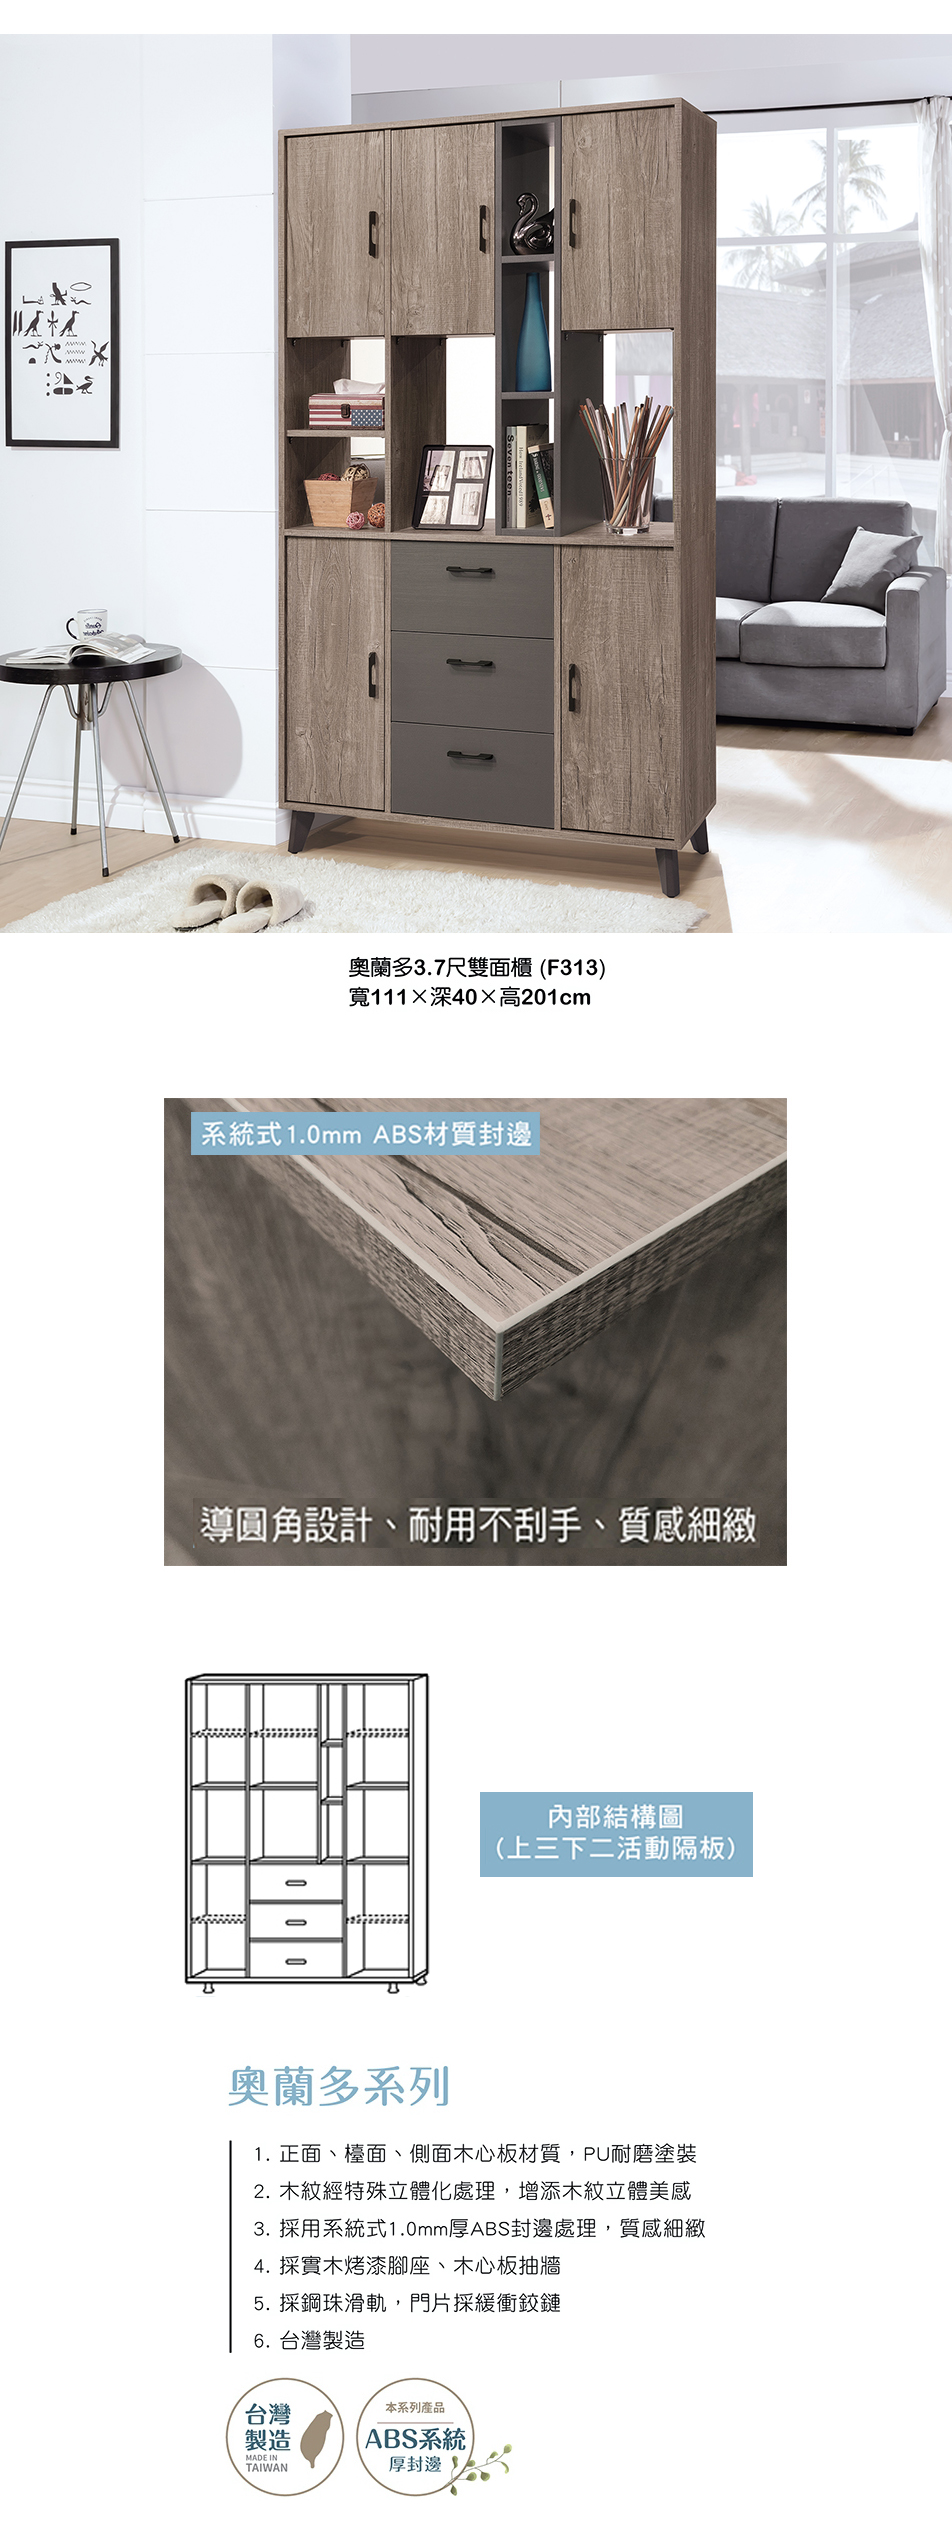 日式奧蘭多3.7尺雙面櫃